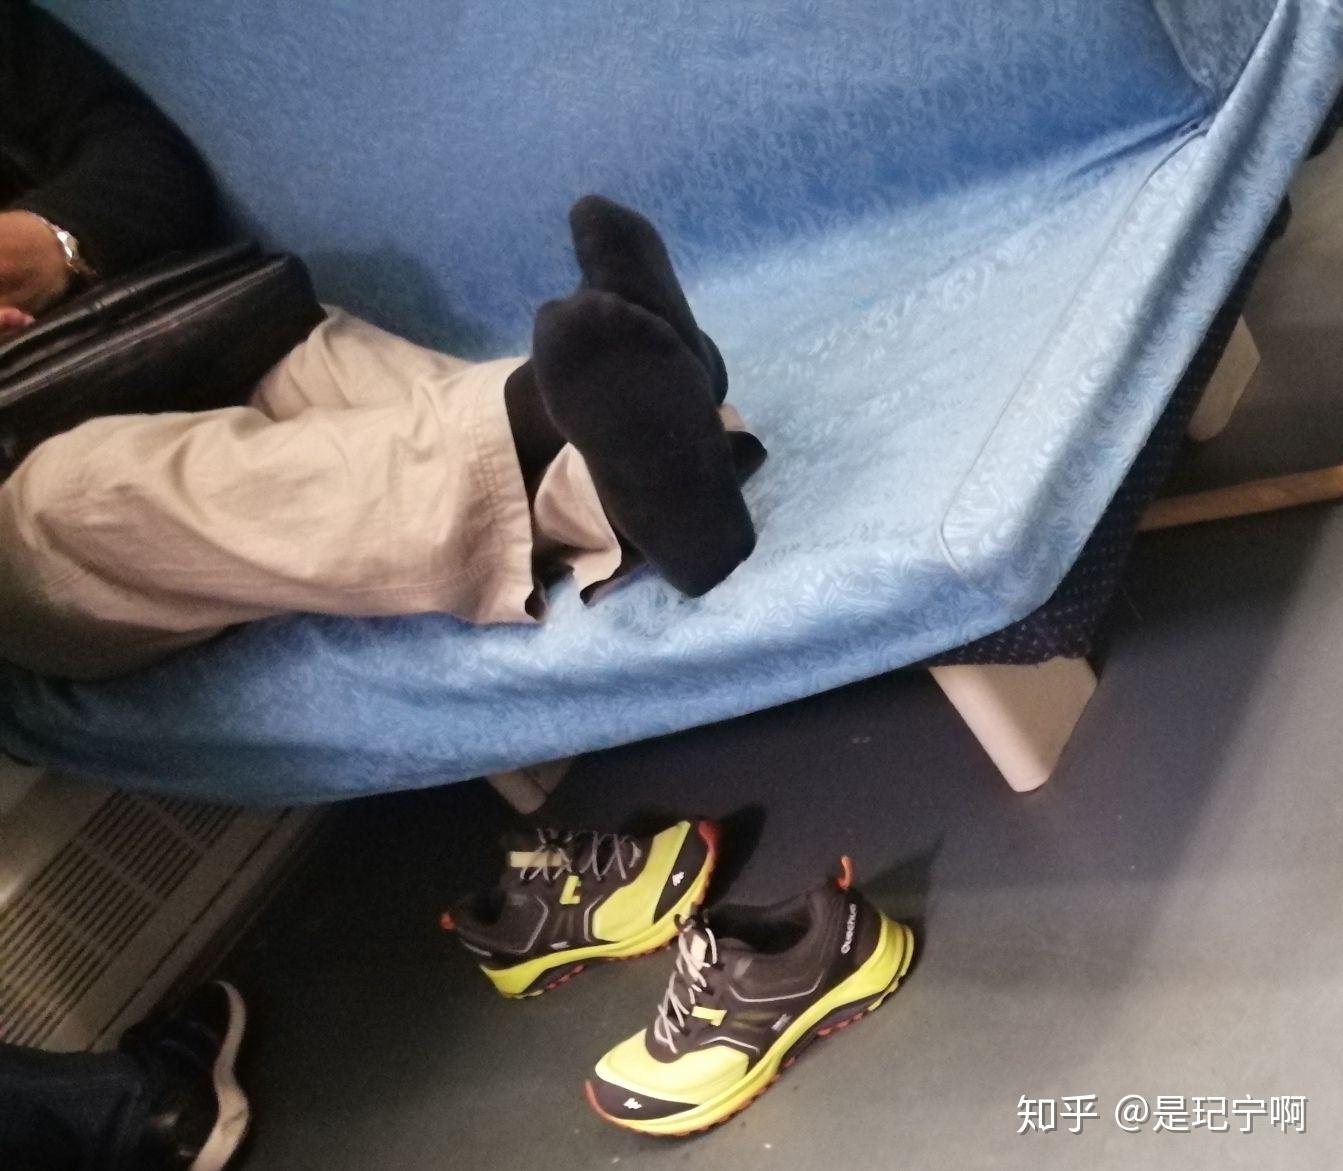 火车上有人脱鞋,味道有点大,怎么善意的提醒呢? 